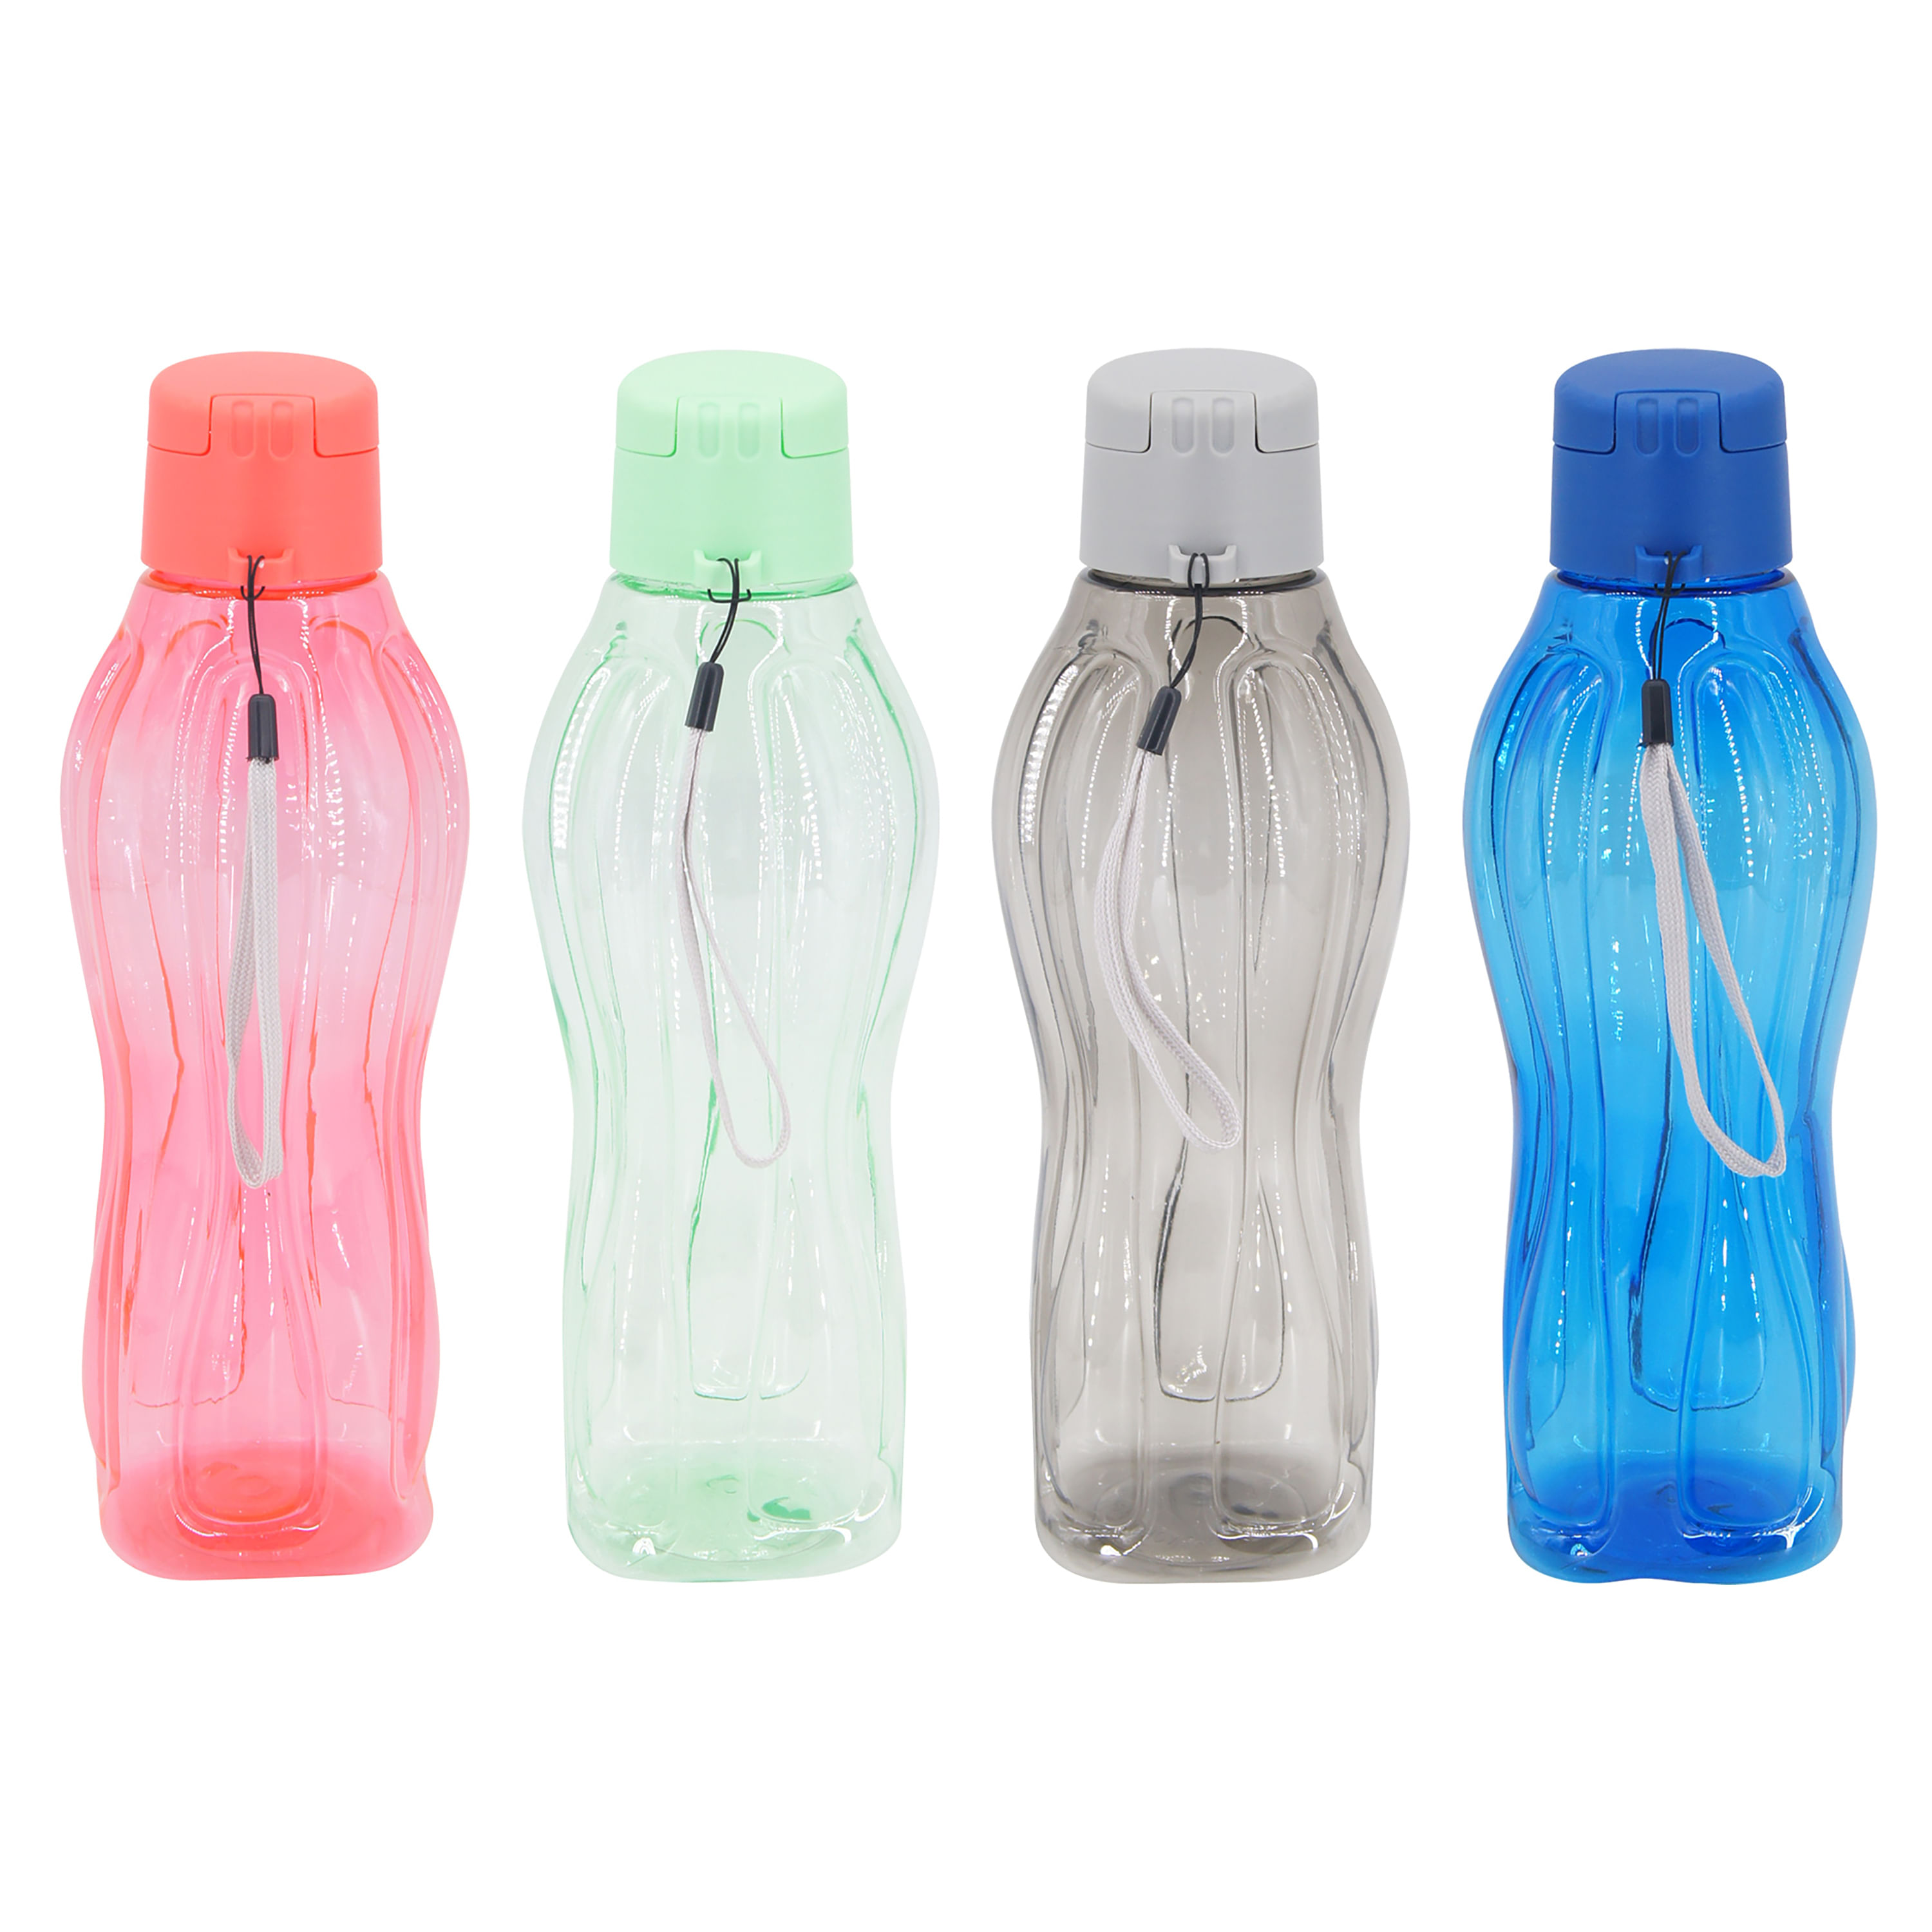 Comprar Botella De Agua Marca Mainstays Capacidad 1 litro